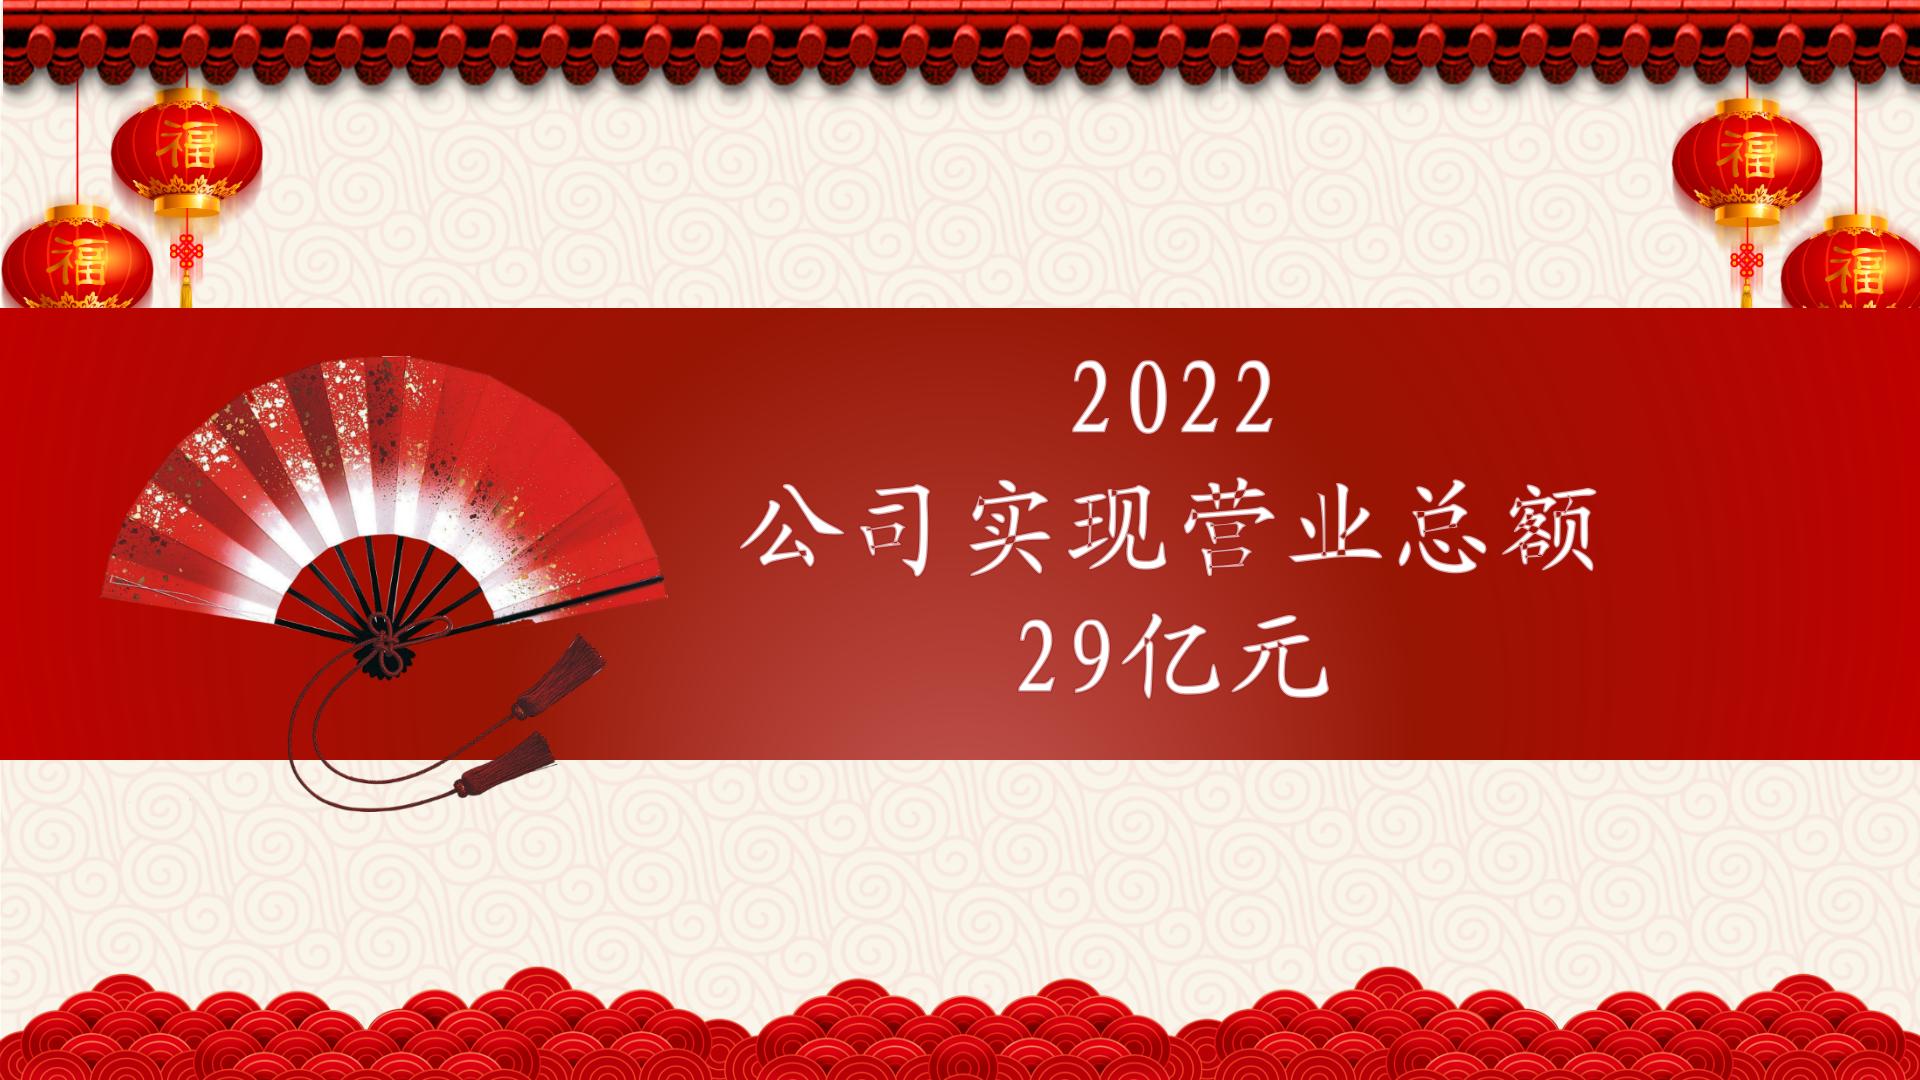 2022中国红剪纸喜庆工作总结暨年会颁奖模板_05.jpg